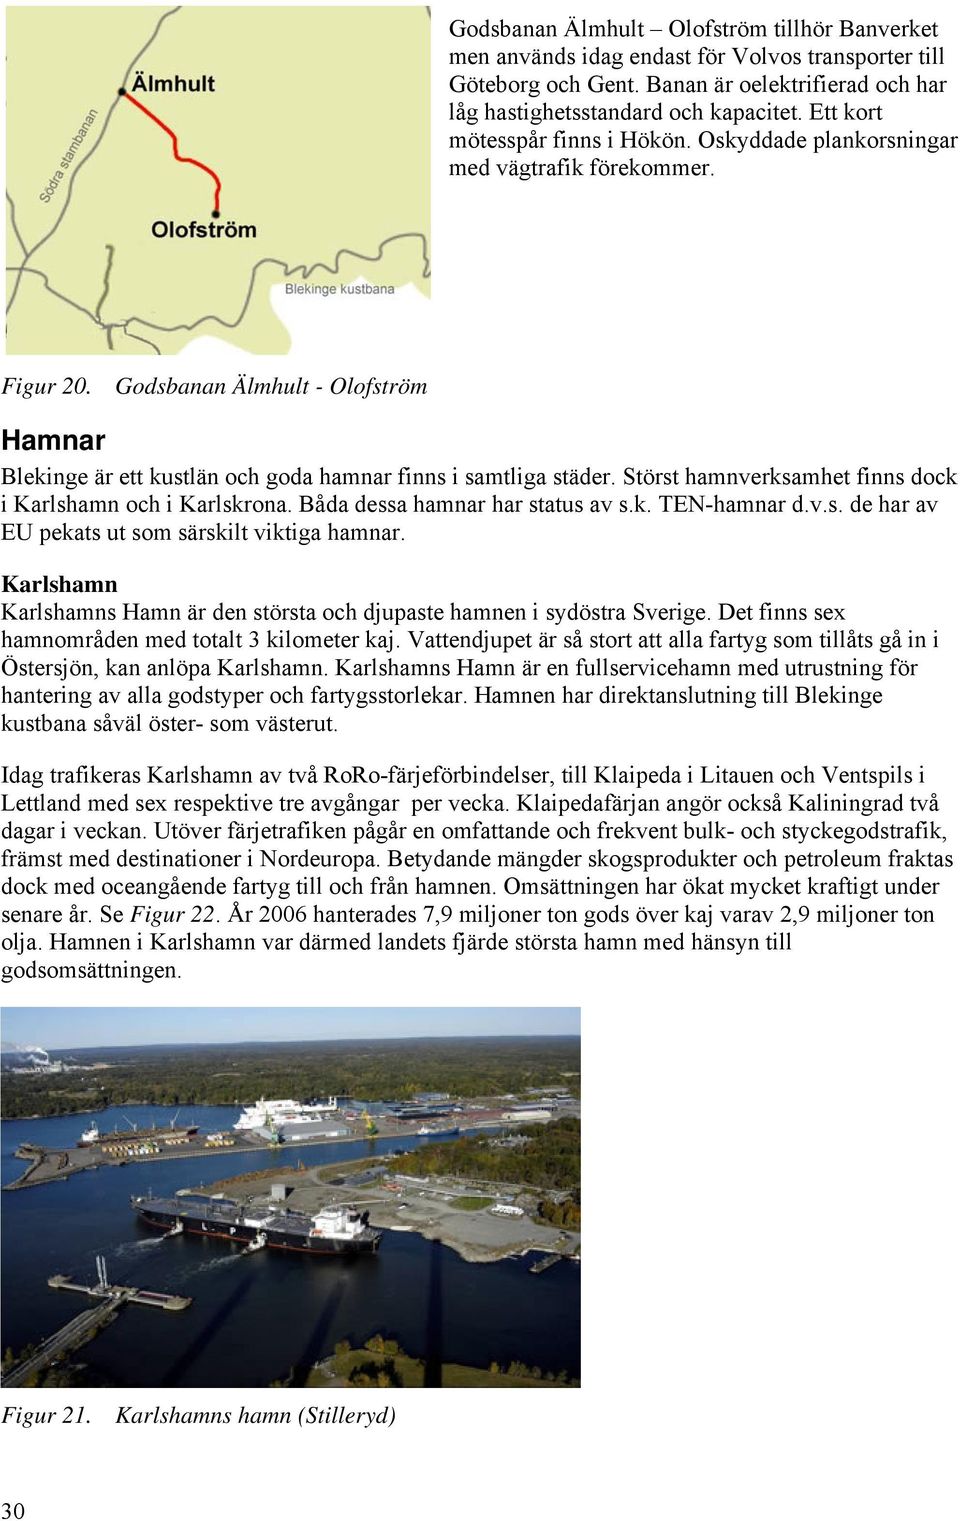 Störst hamnverksamhet finns dock i Karlshamn och i Karlskrona. Båda dessa hamnar har status av s.k. TEN-hamnar d.v.s. de har av EU pekats ut som särskilt viktiga hamnar.